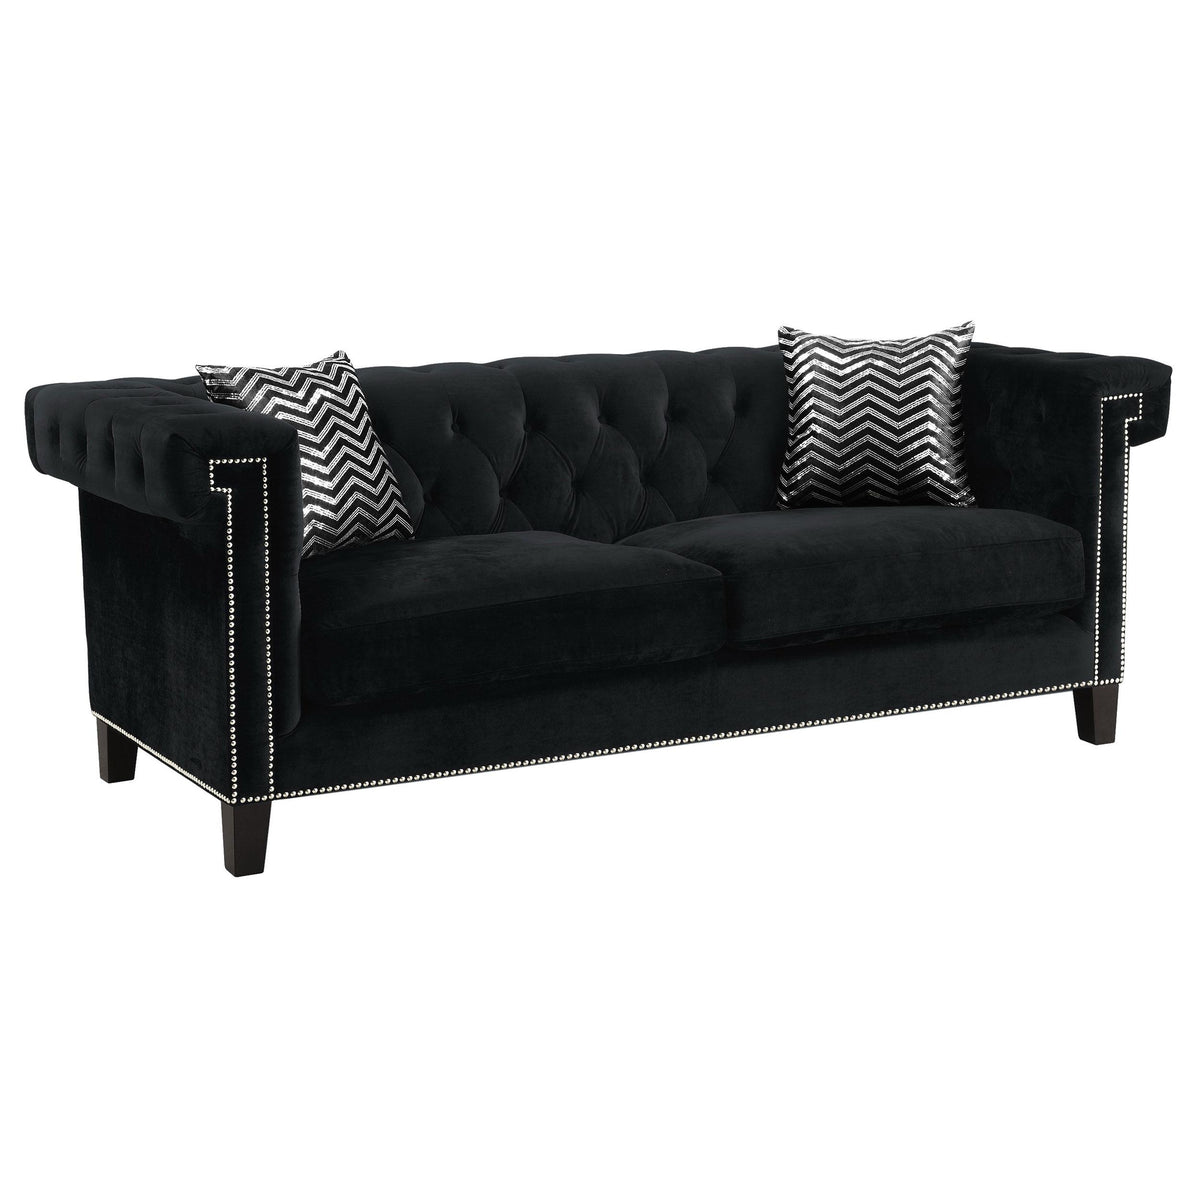 Reventlow Tufted Sofa Black  Half Price Furniture